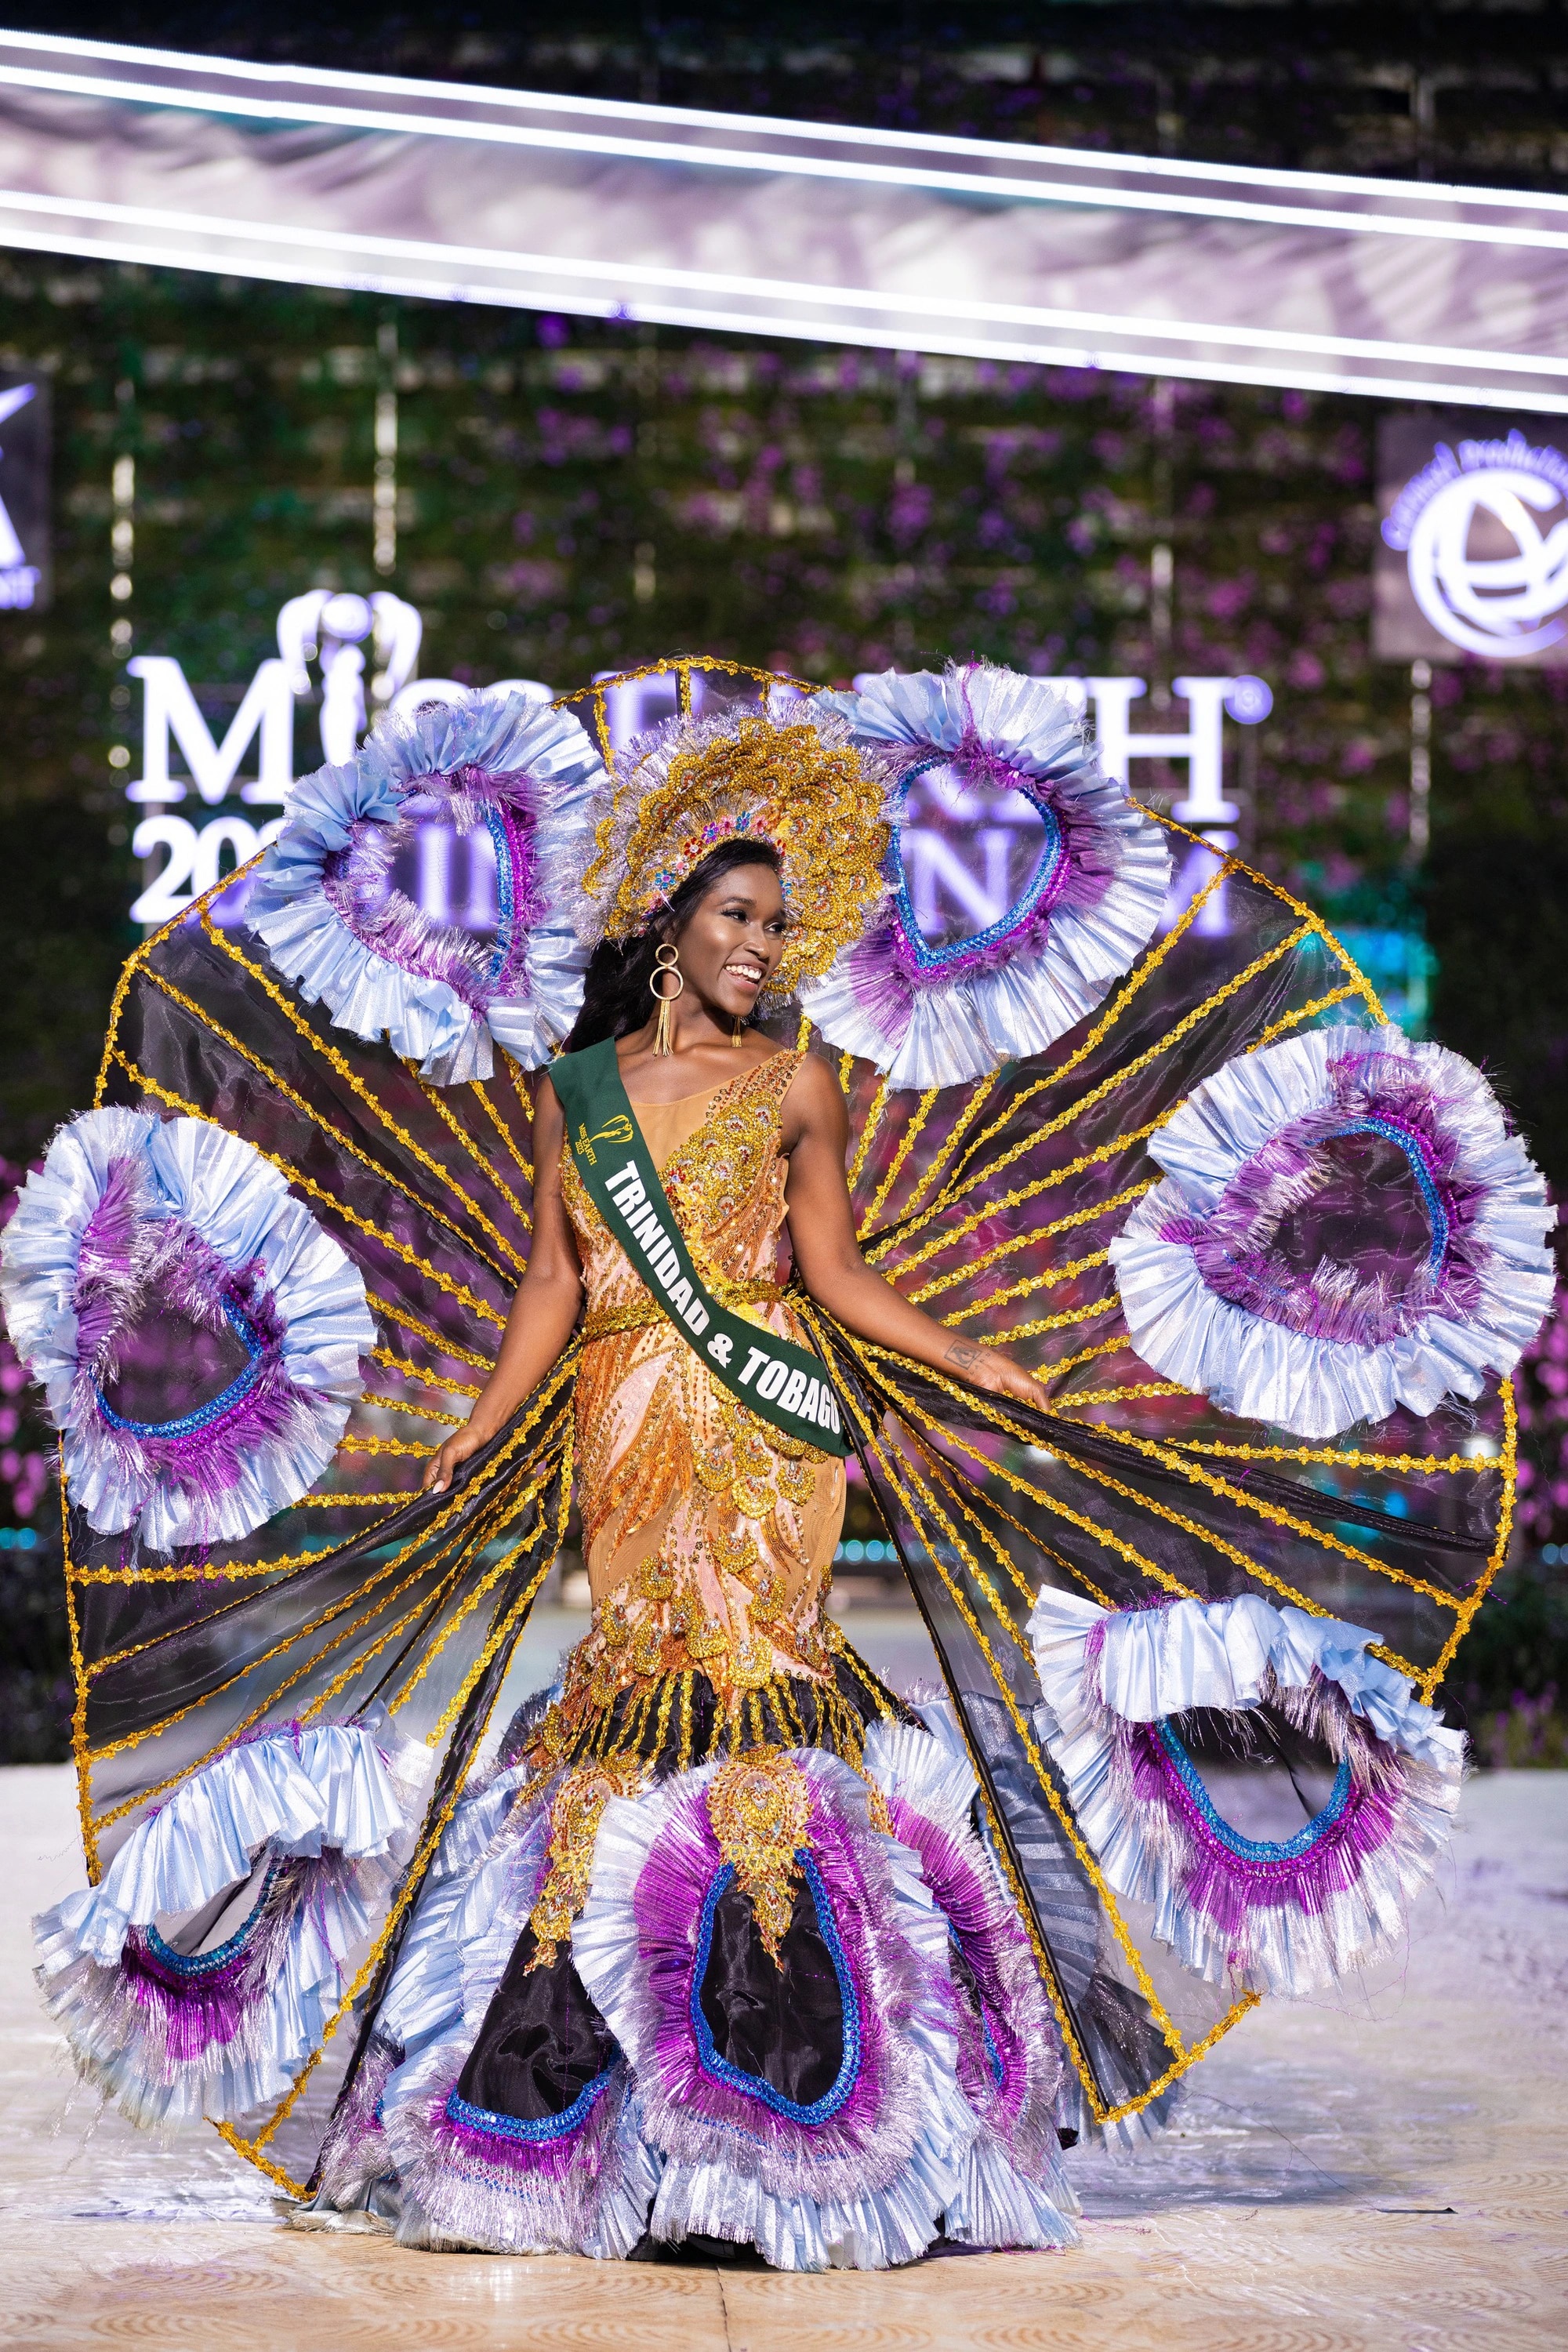 Bán kết Miss Earth 2023 màn trình Trang phục Dân tộc bùng nổ hình ảnh cỏ hoa, muông thú - Ảnh 7.